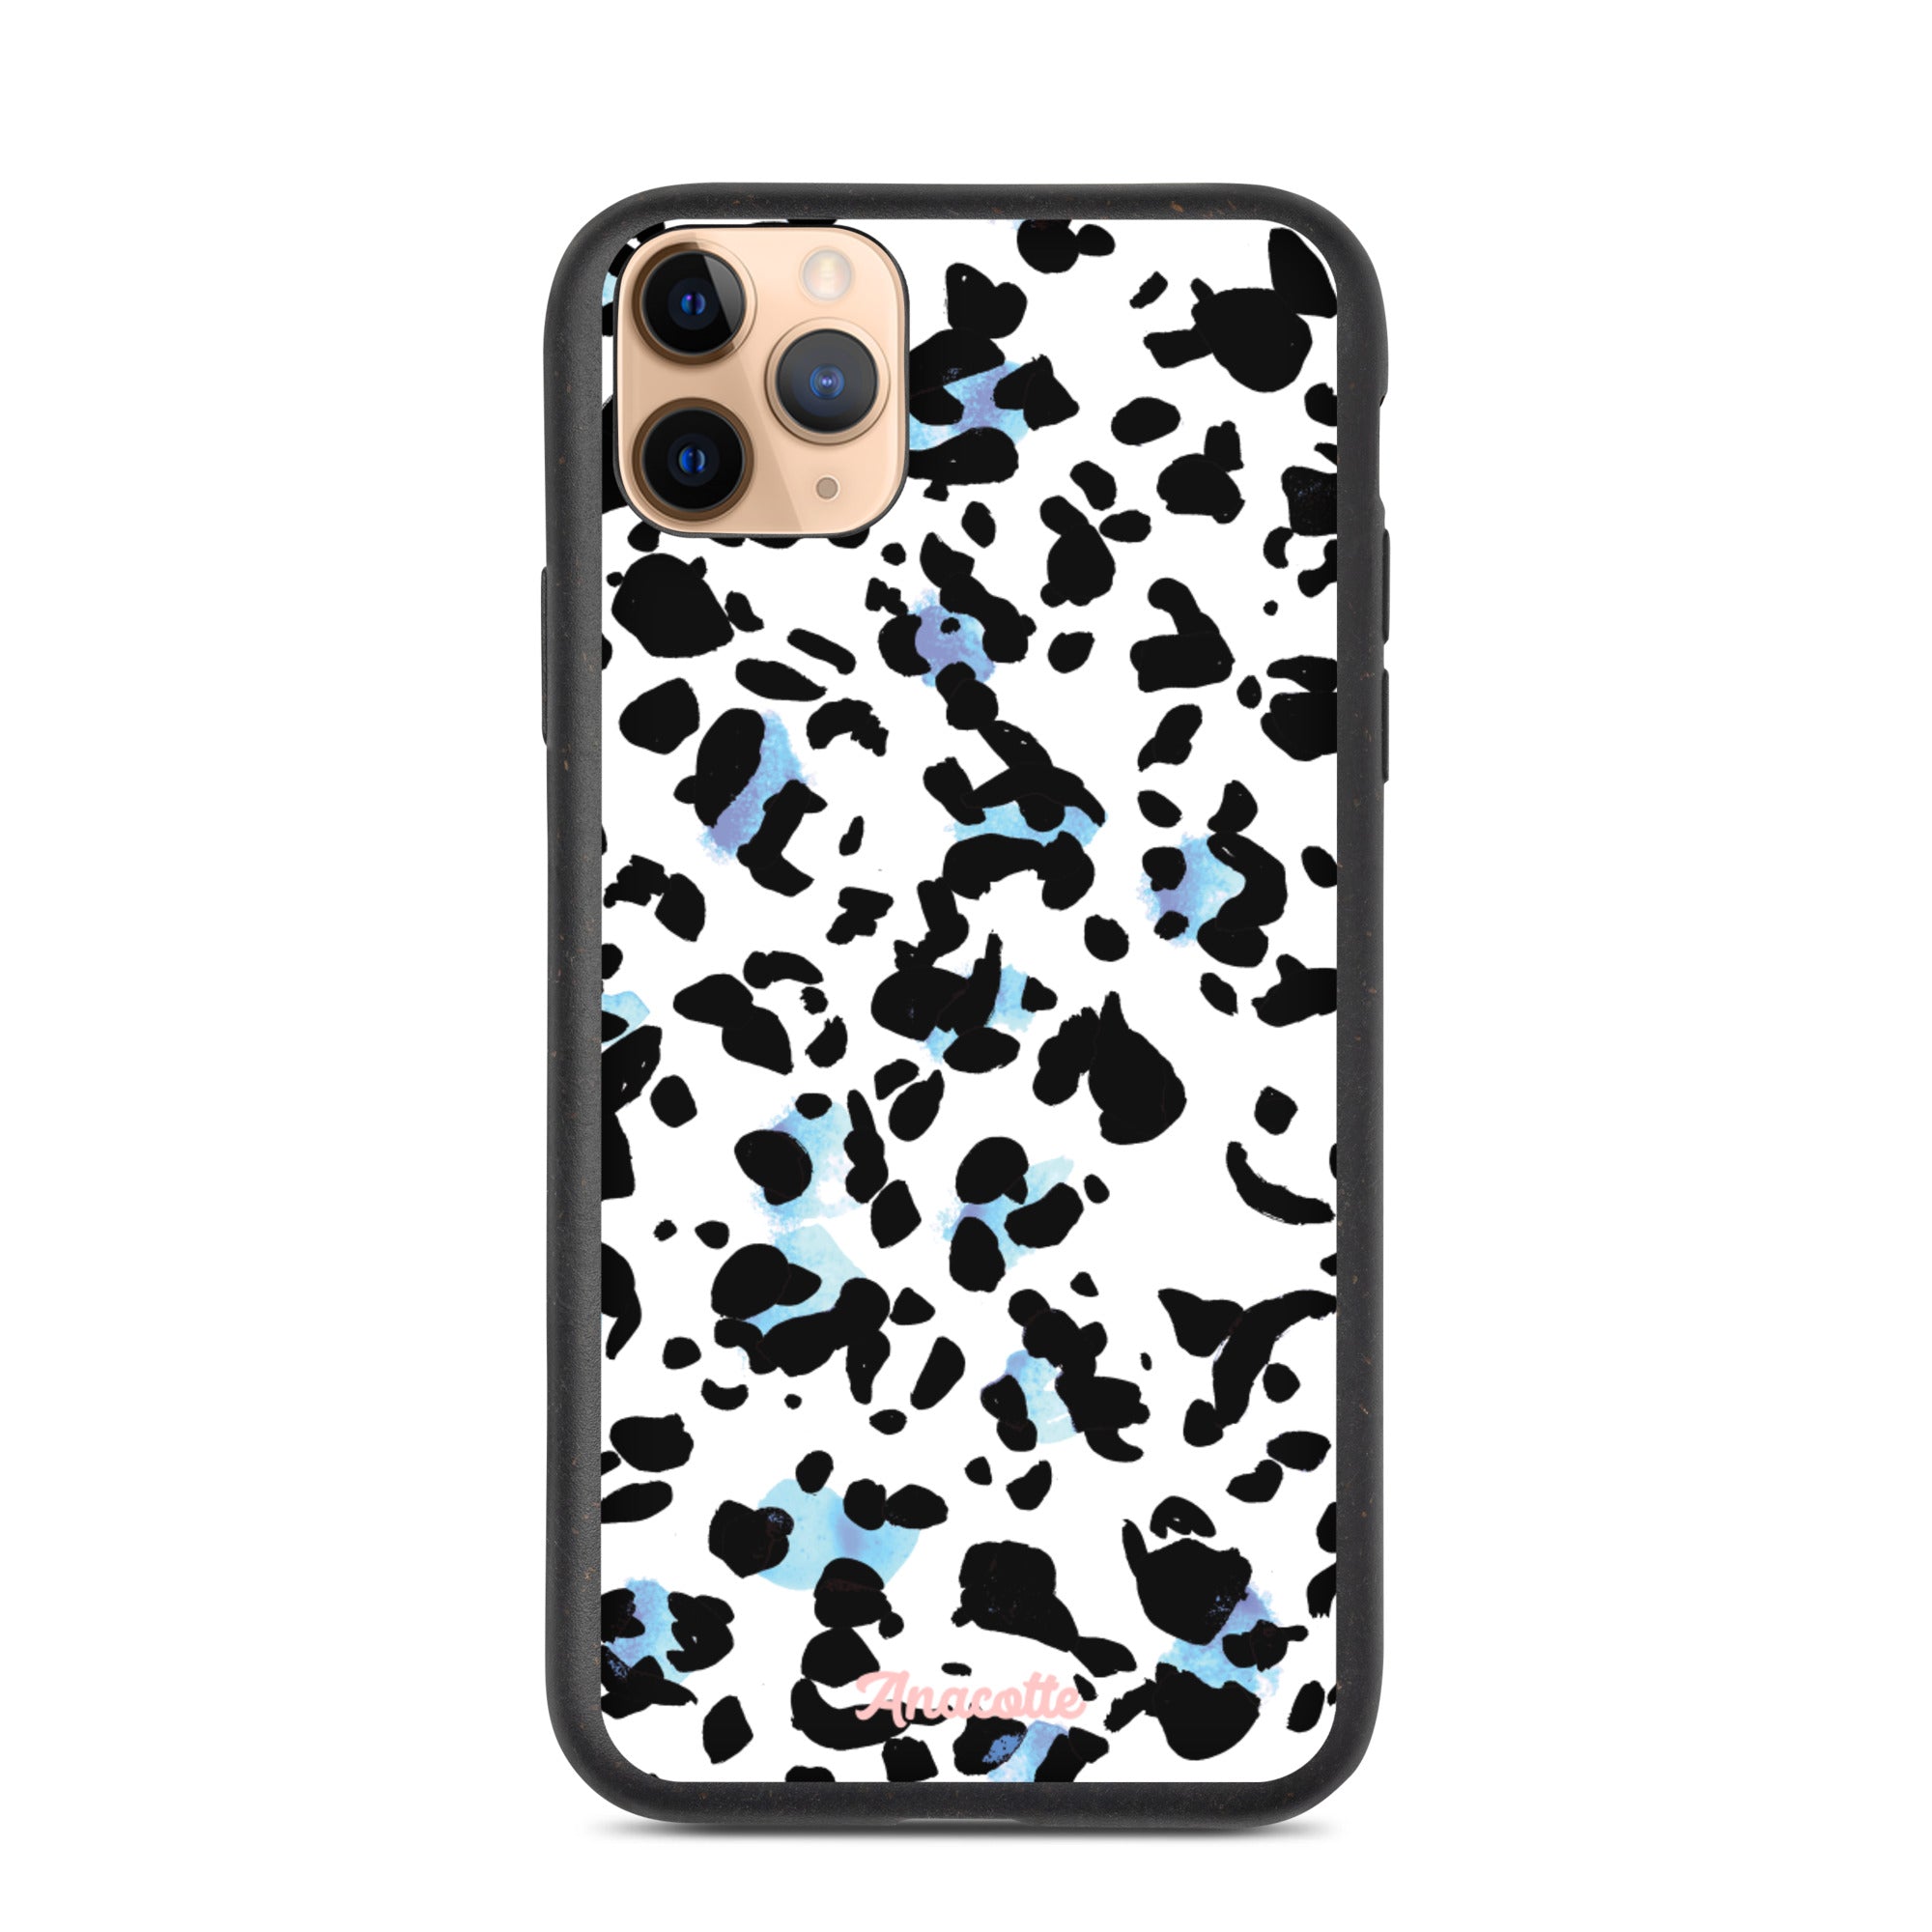 Anacotte Stylish Eco-Friendly Sustainable iPhone case